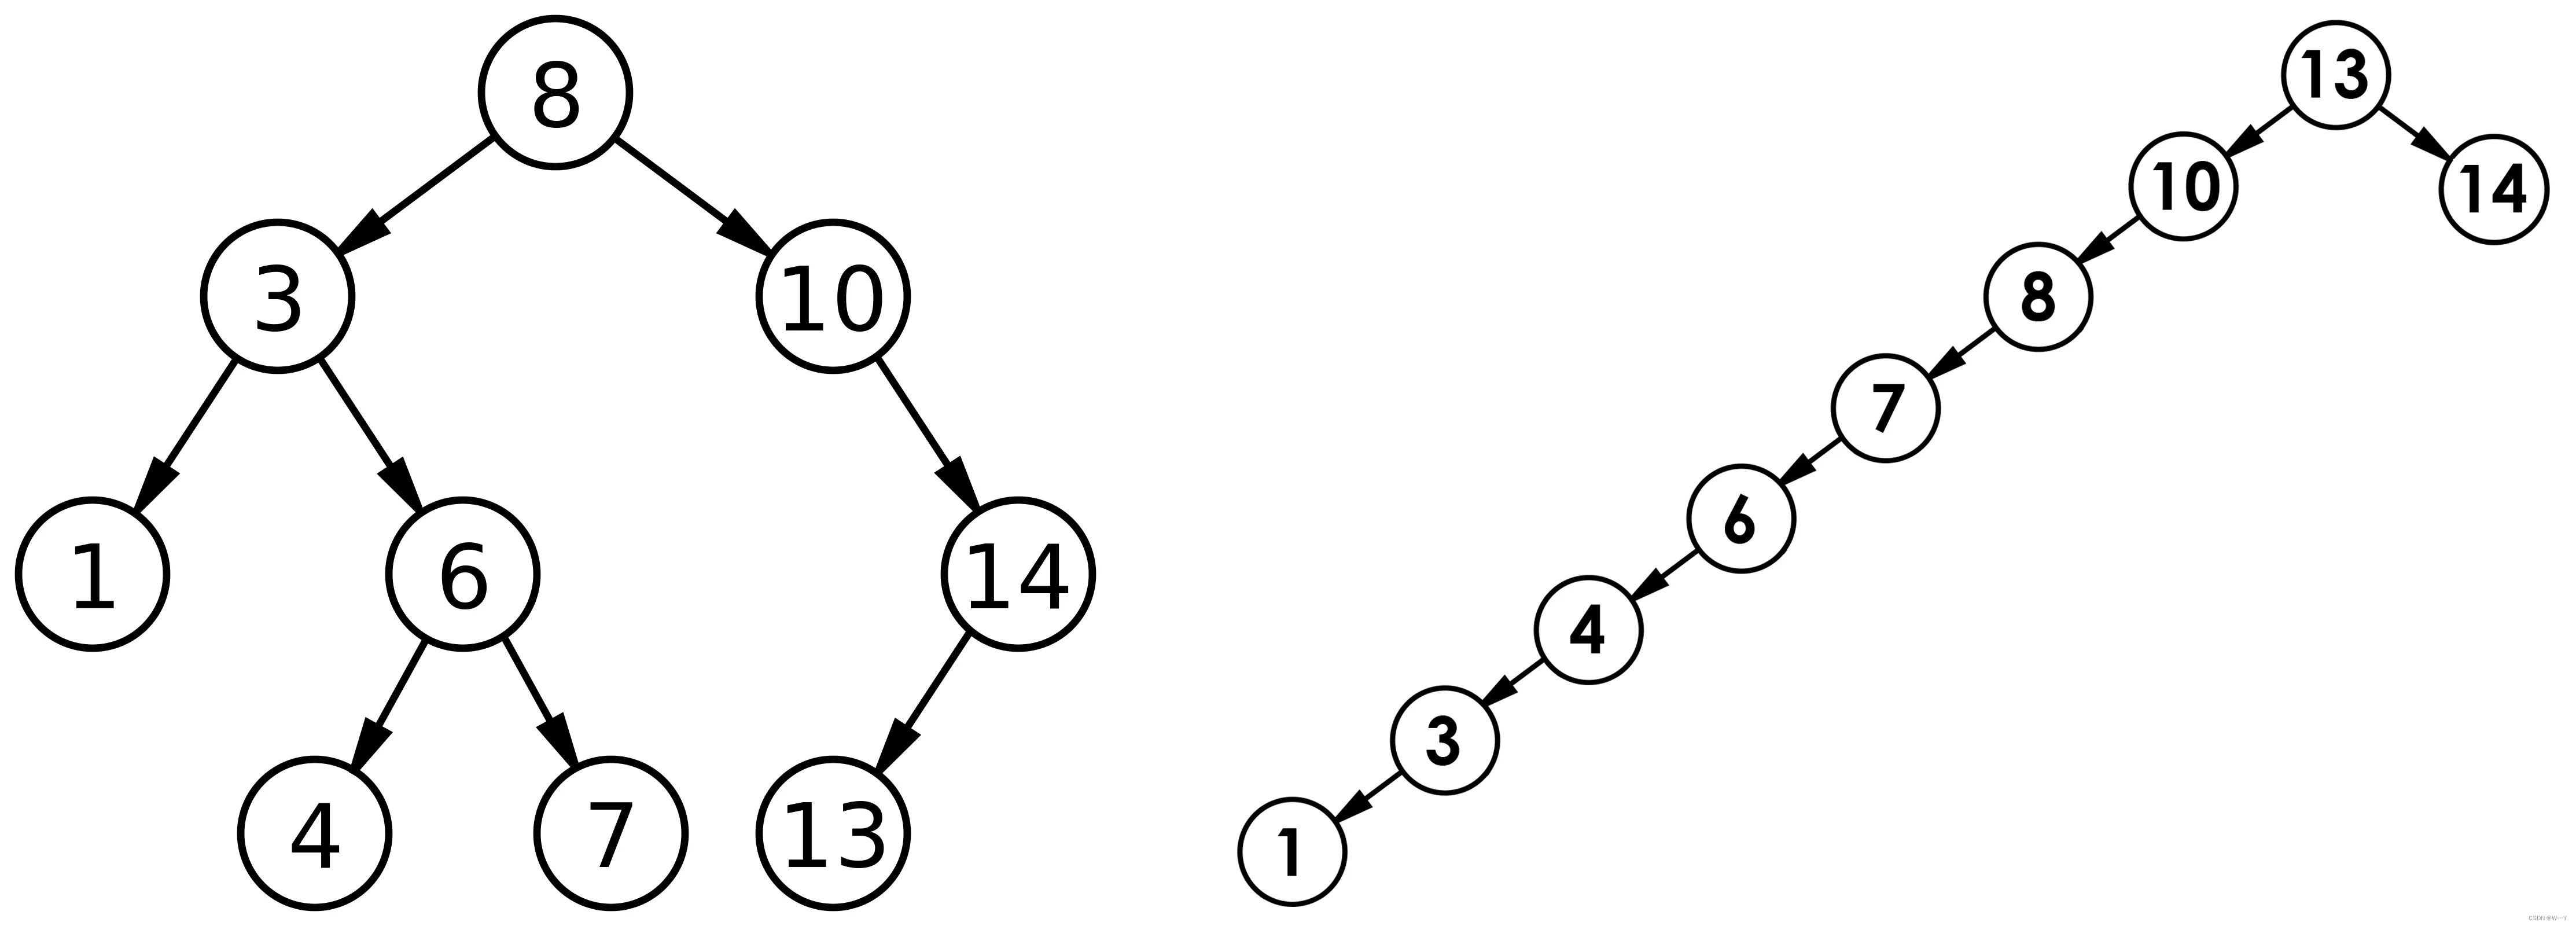 【C++历练之路】二叉搜索树的学习应用及其实现